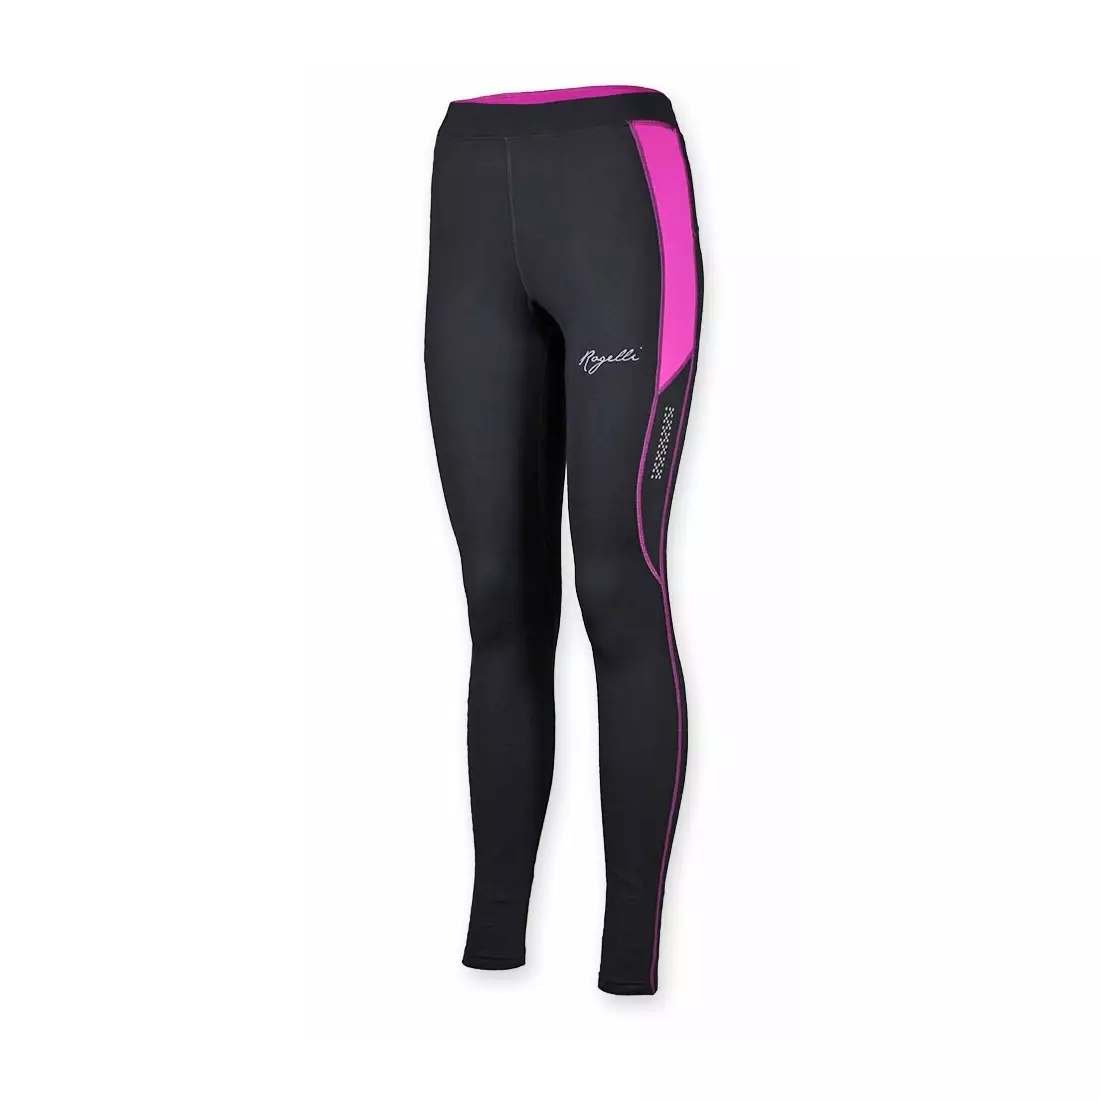 ROGELLI ADELA pantaloni izolați pentru alergare damă 840.750, negru și roz